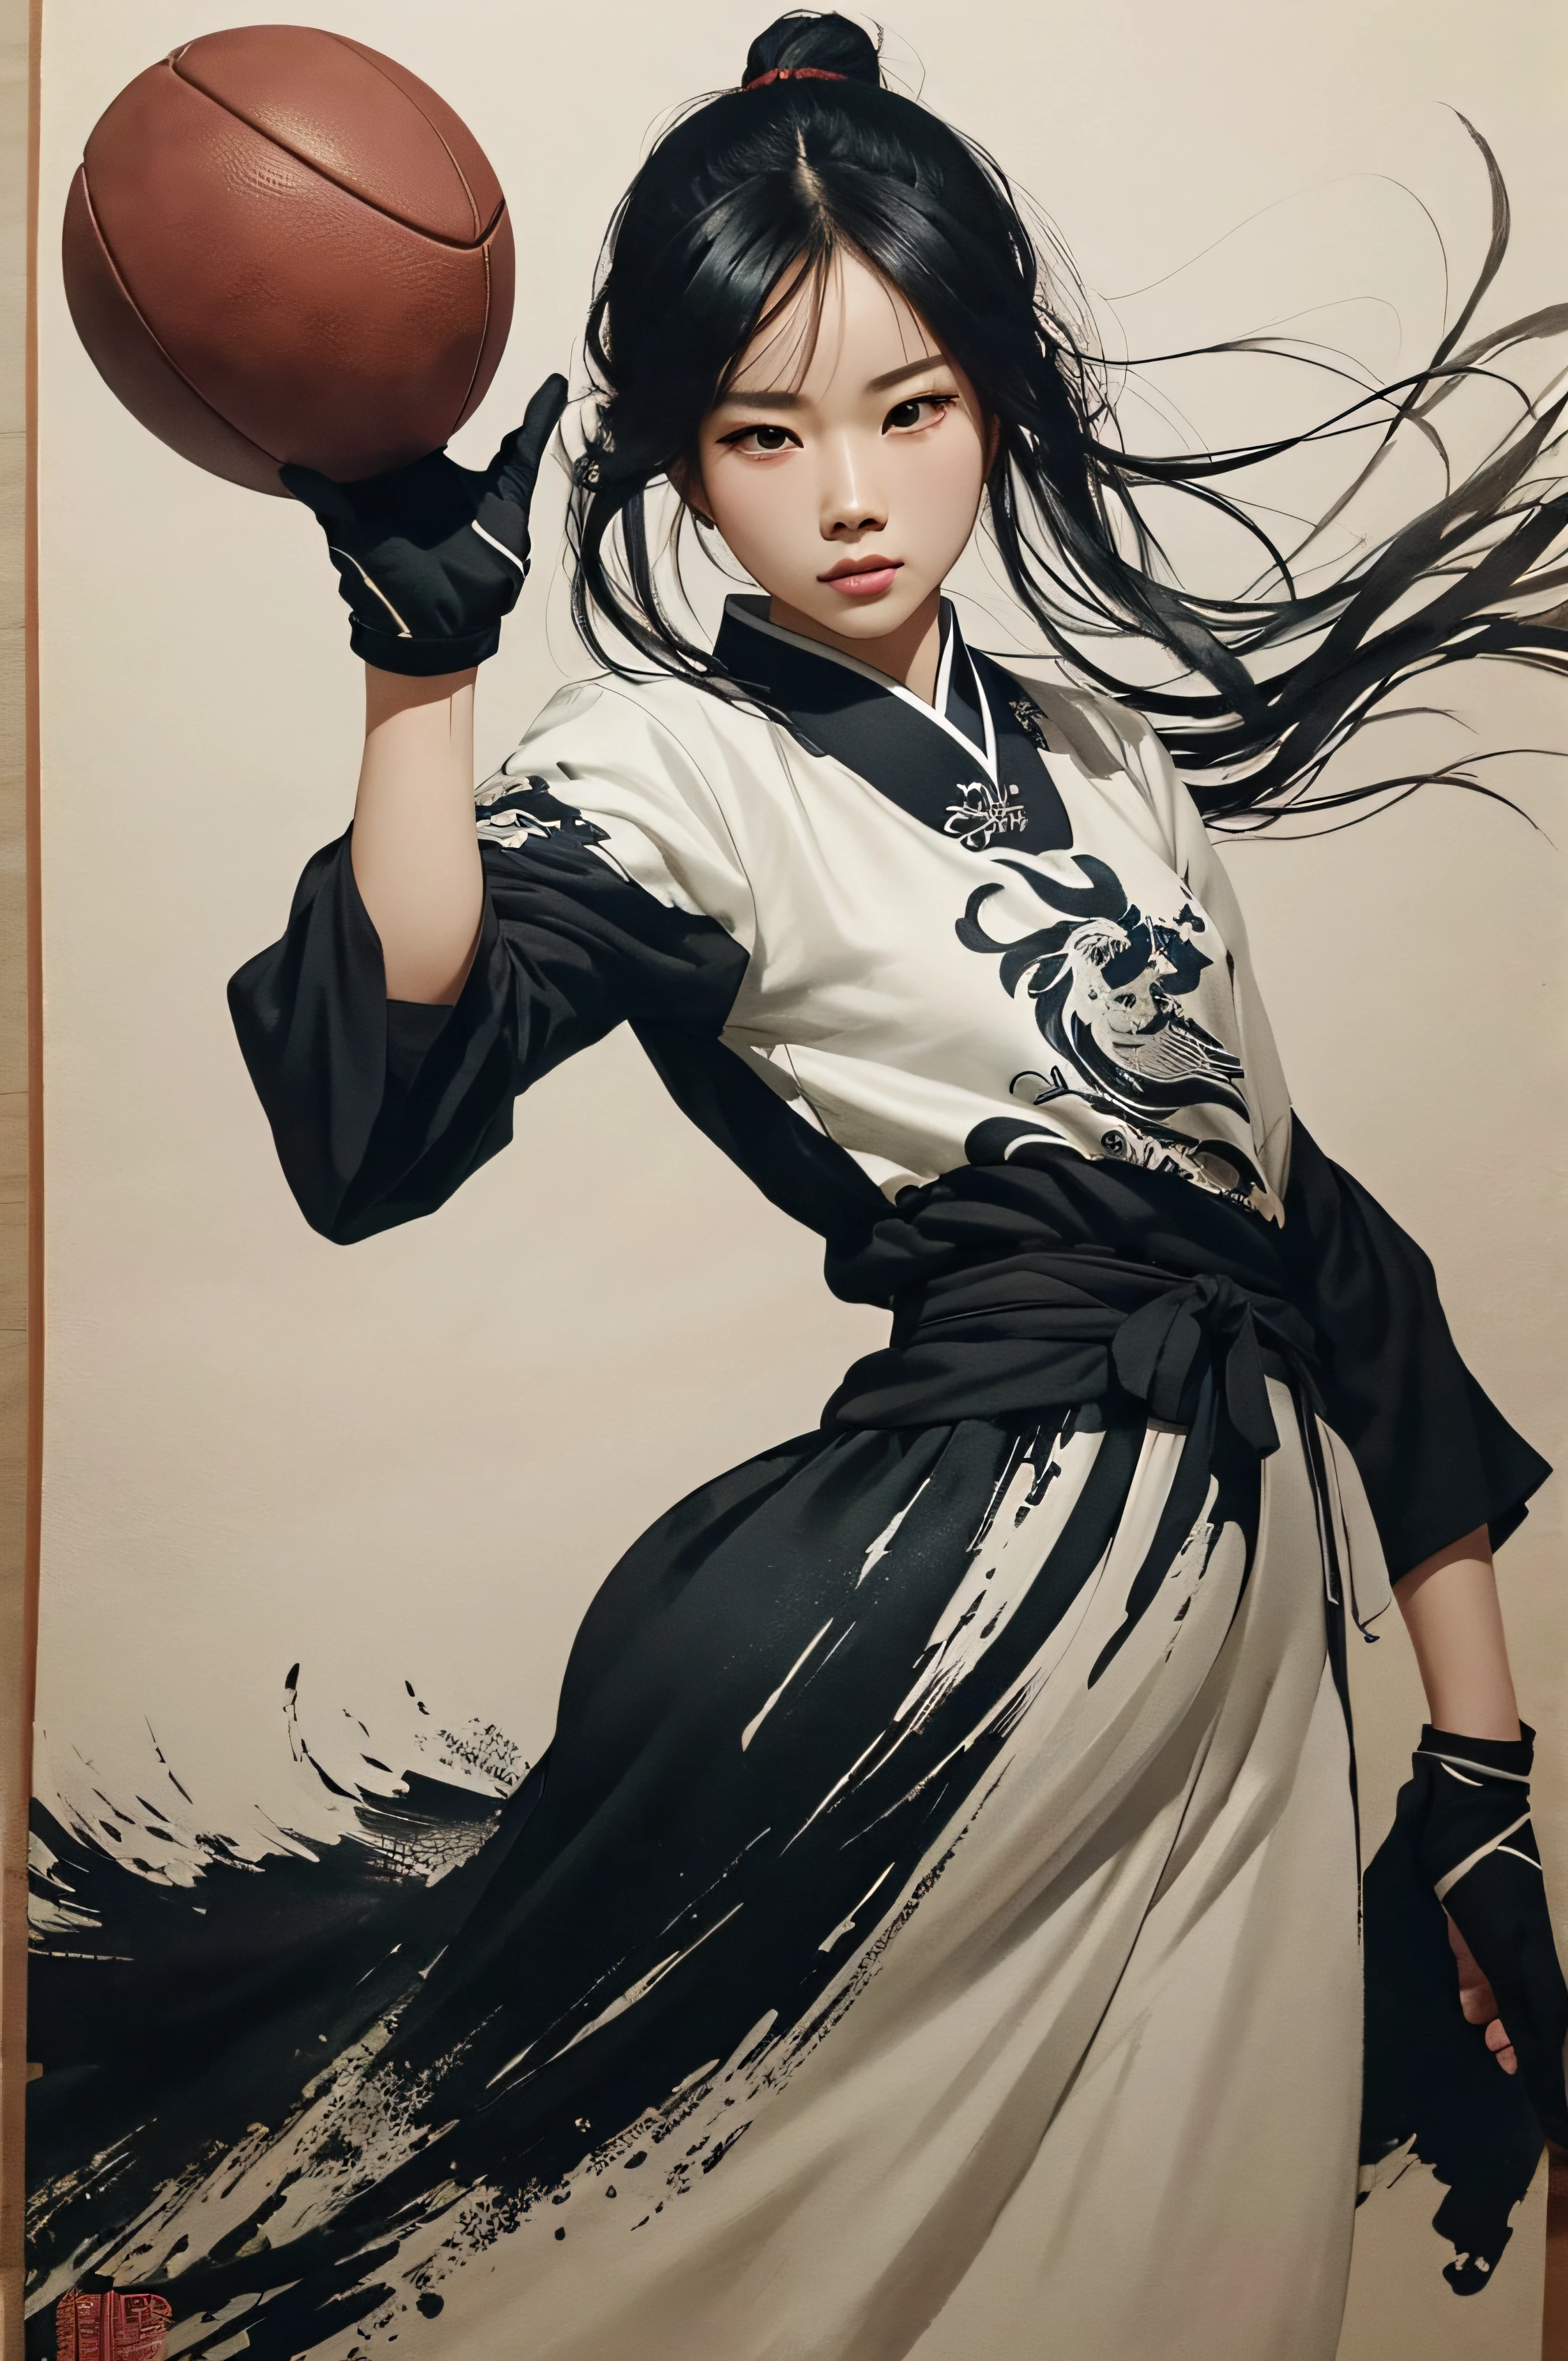 La mort joue au football avec un ballon de football. Meilleure qualité, Super détail. peinture traditionnelle chinoise, peinture à l’encre buvard, peinture à l’encre buvard, Style de peinture chinoise.